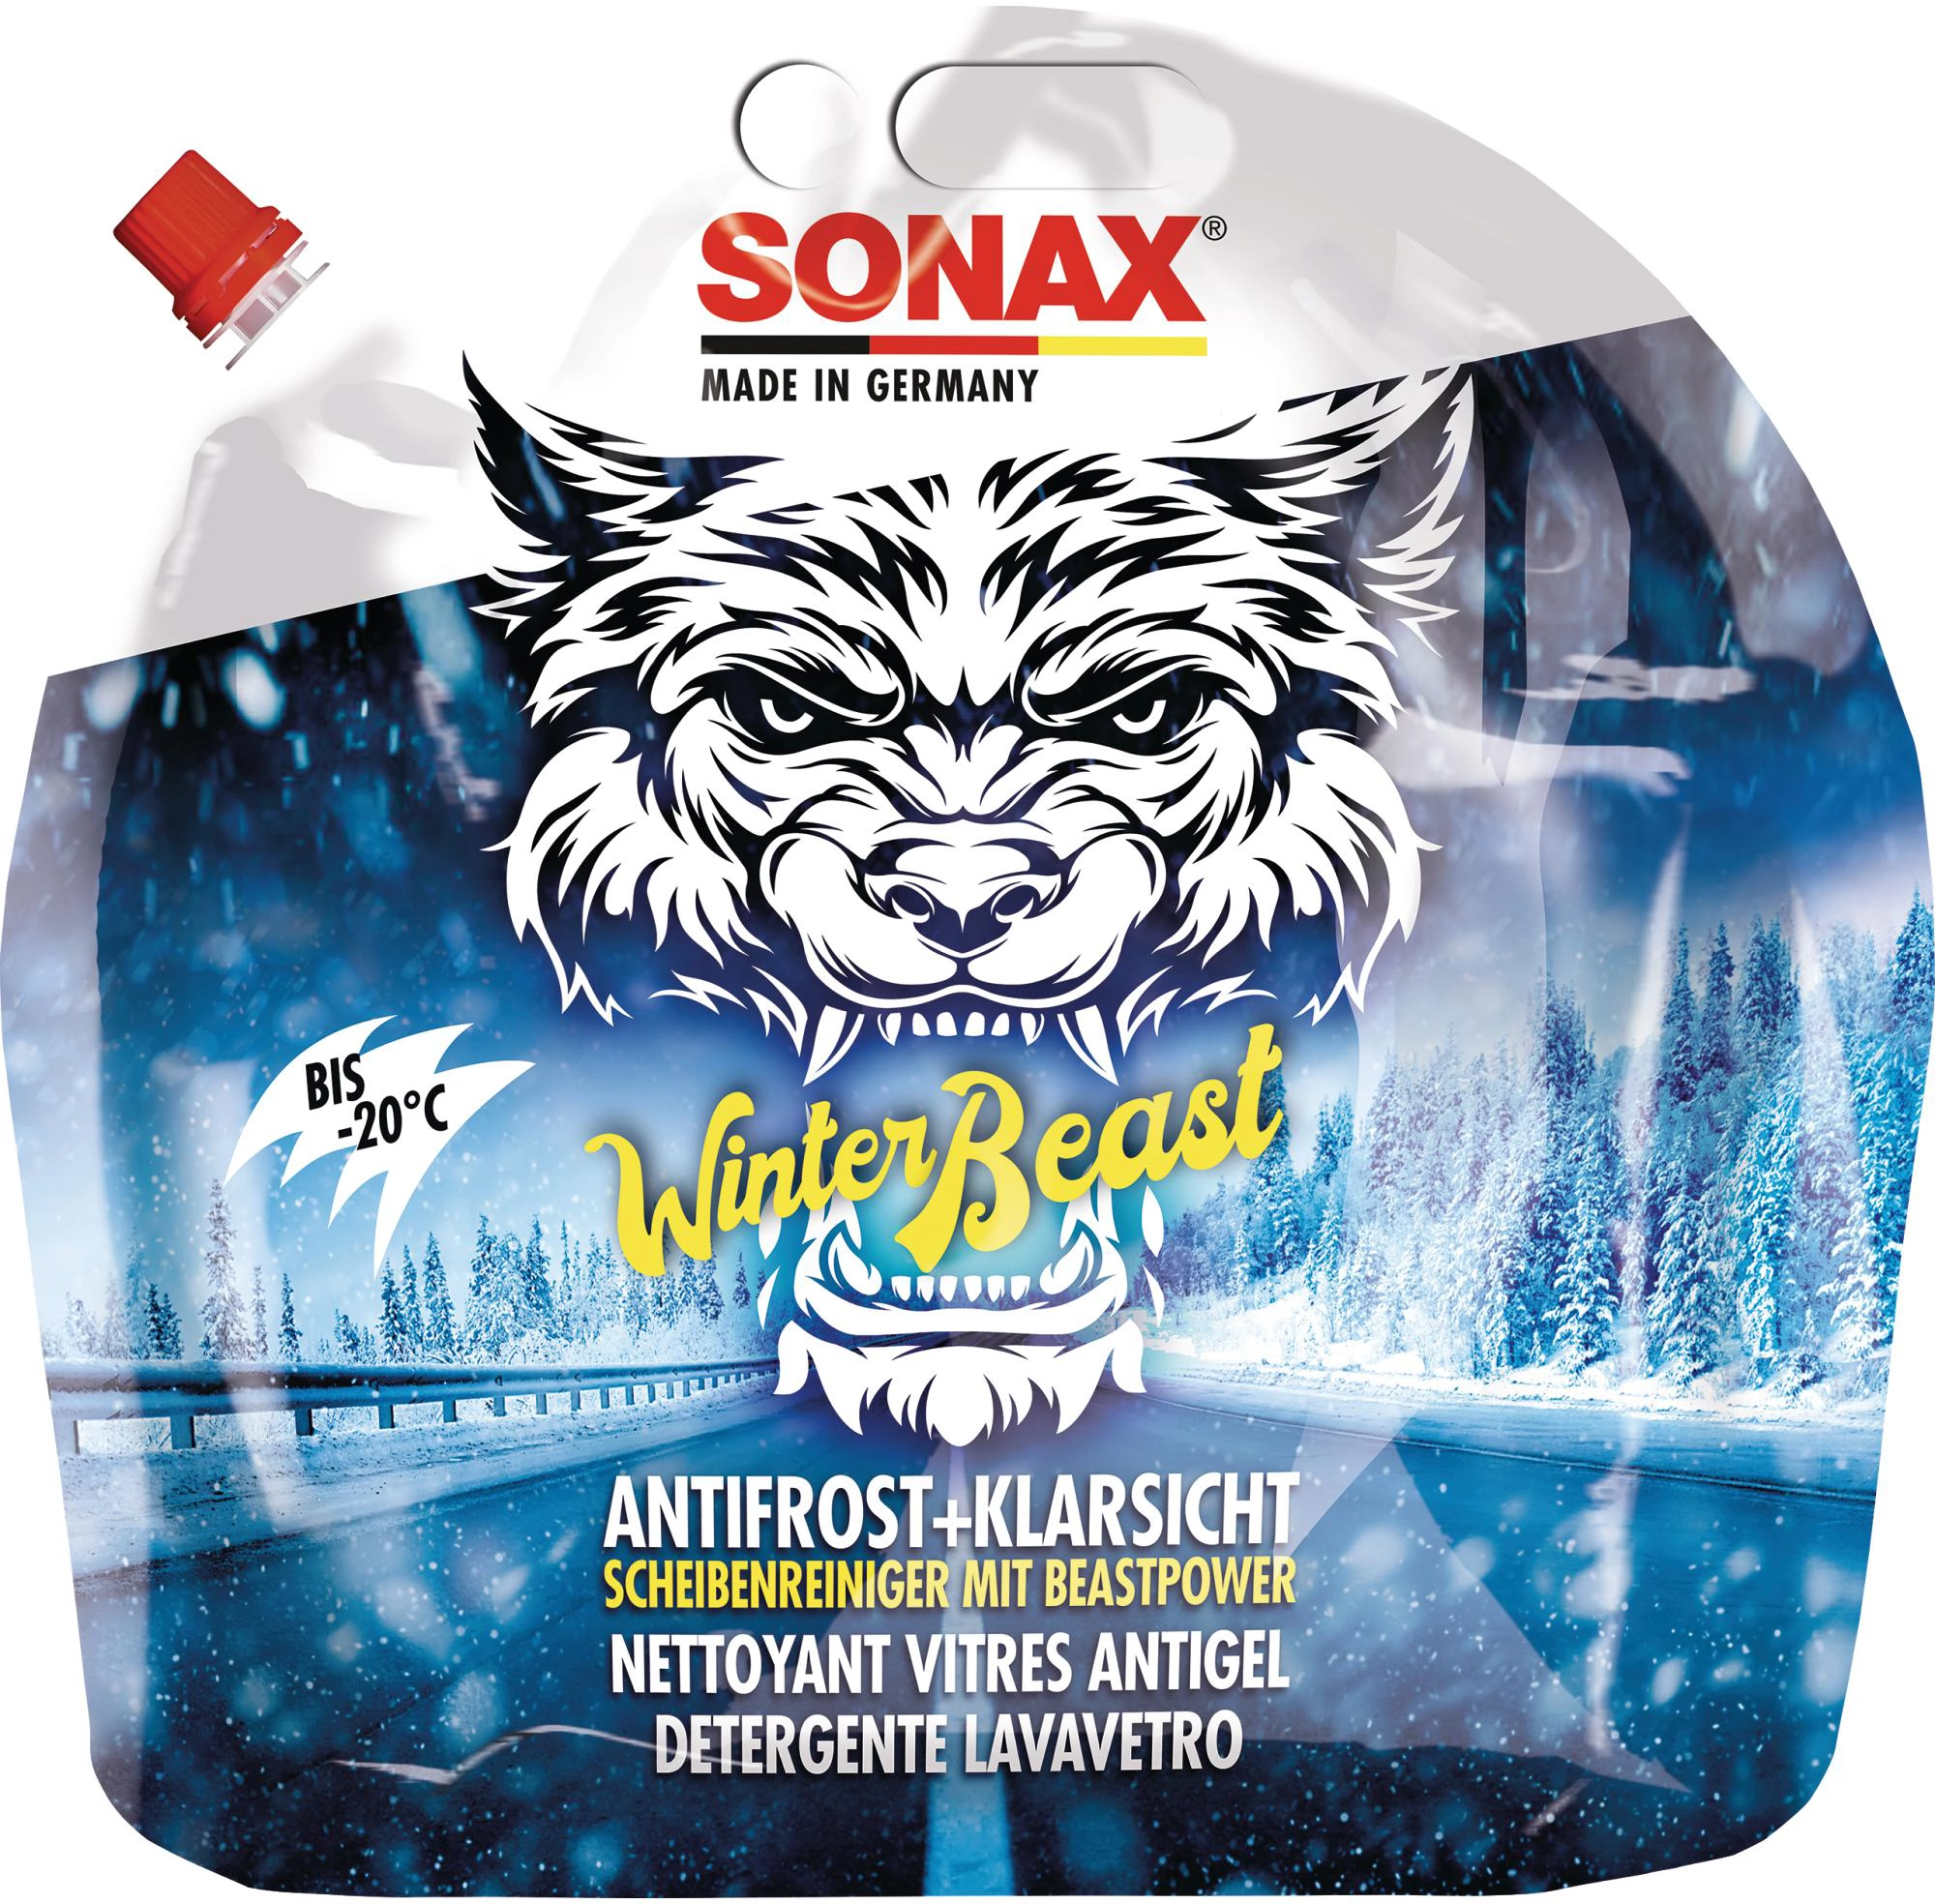 SONAX AntiFrost & KlarSicht Scheiben-Frostschutz Konzentrat, 5L (03325050)  Elektroshop Wagner